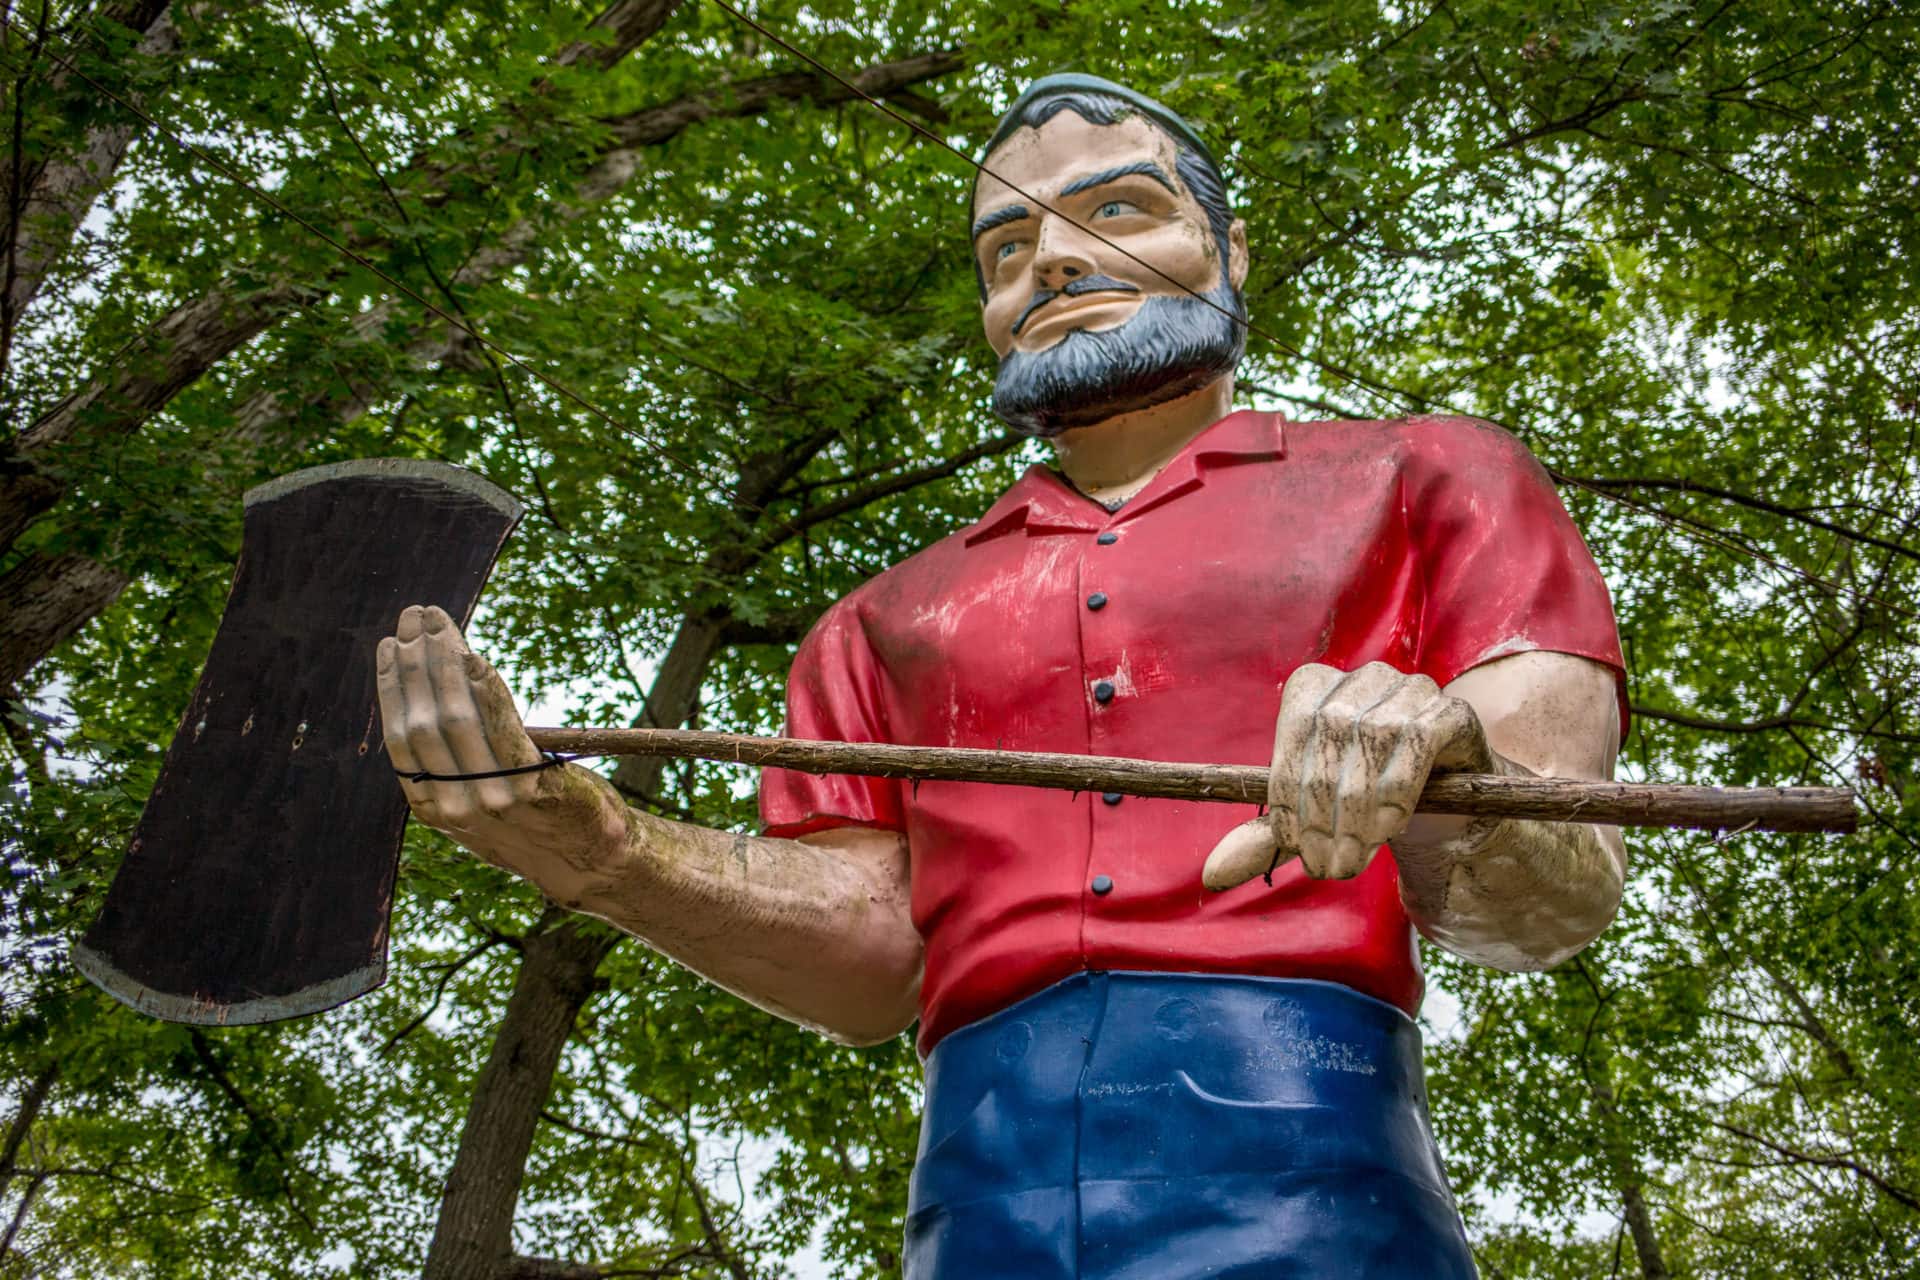 a fiberglass muffler man with a red shirt and grey beard clutching an axe